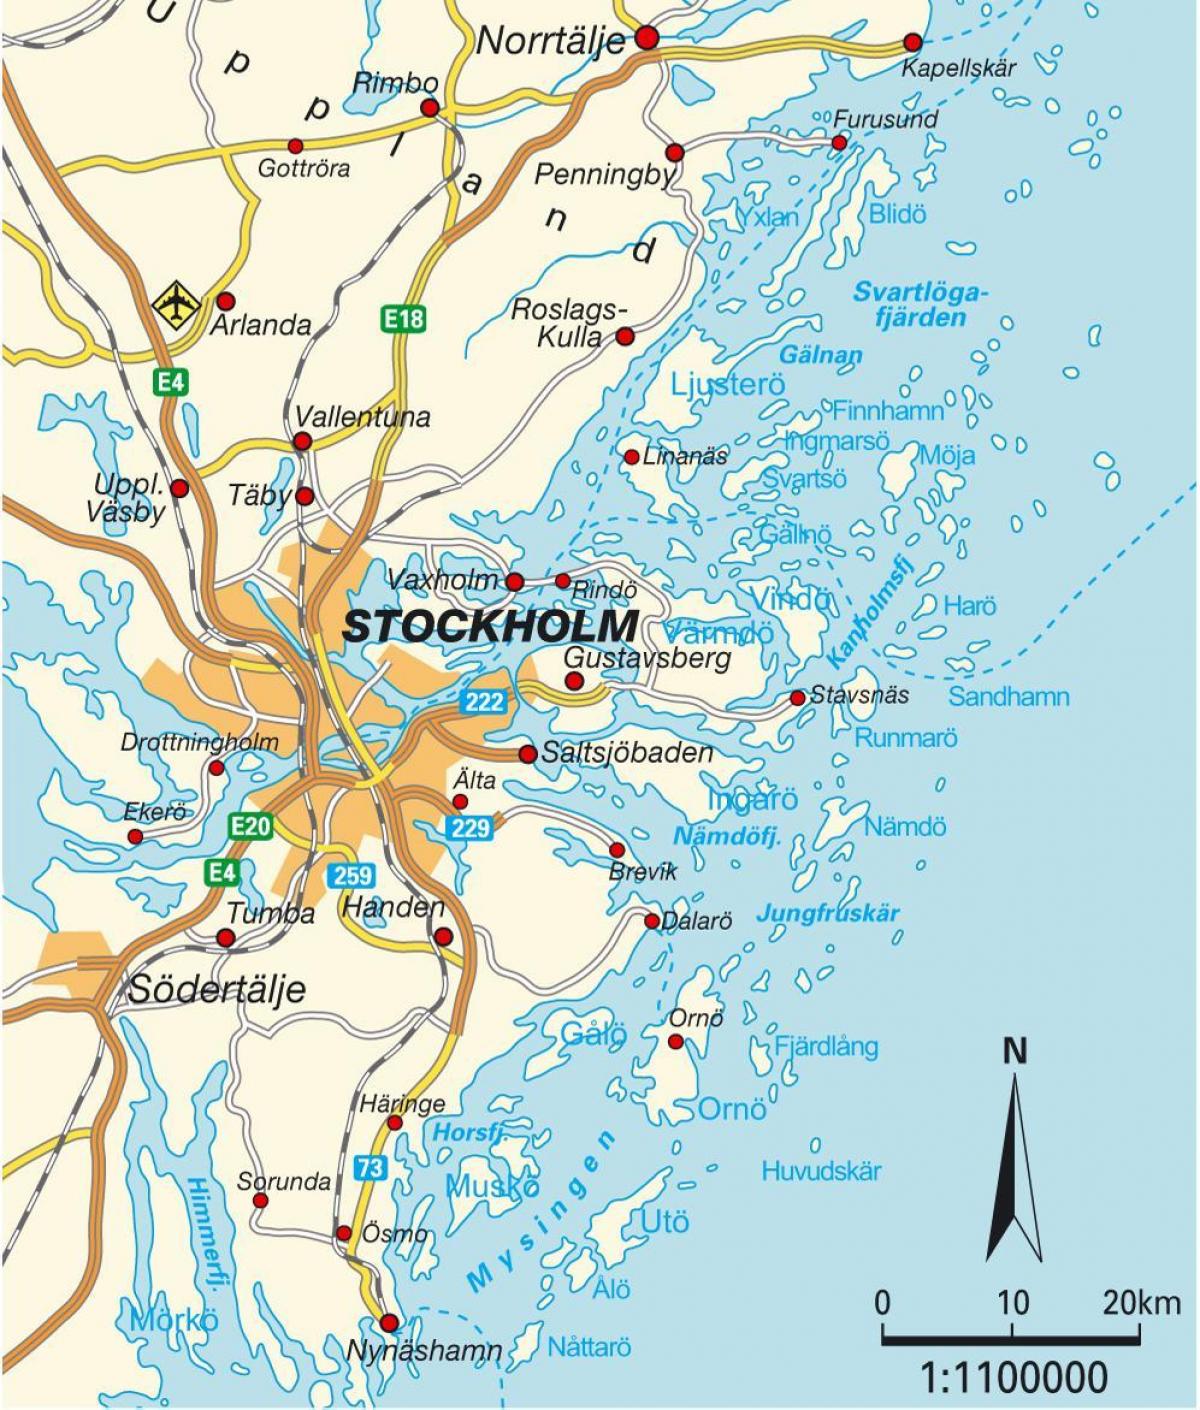 Стокгольм на карті